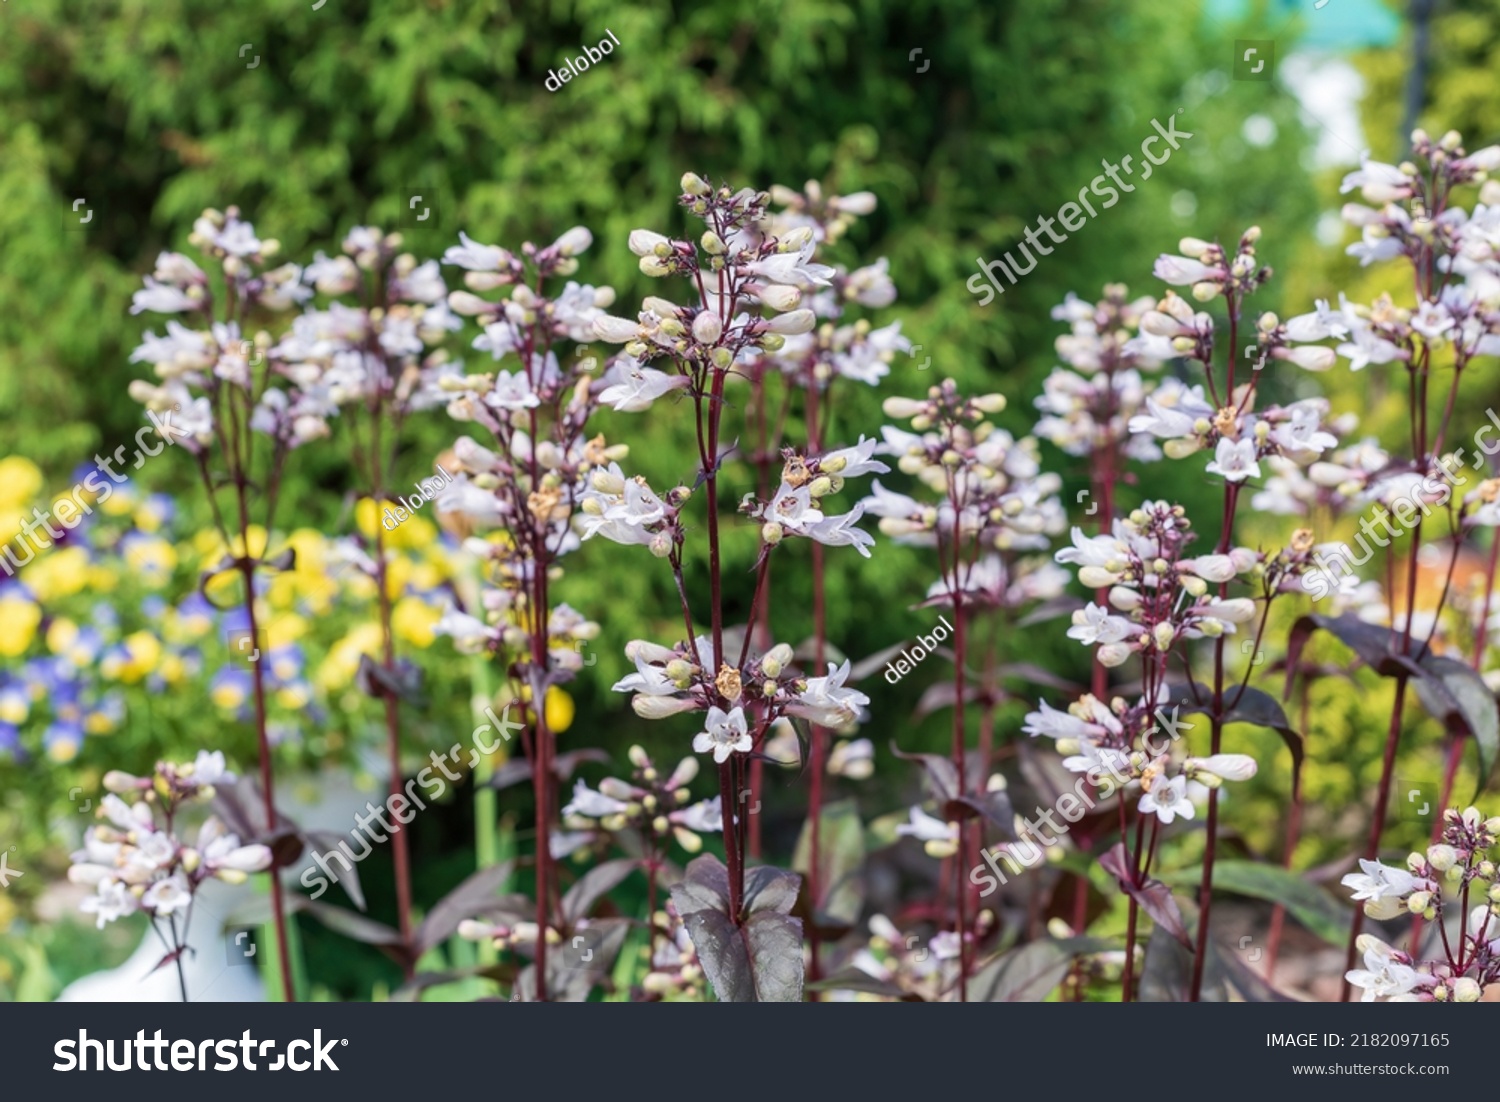 White flowers of Penstemon digitalis in the garden. #2182097165